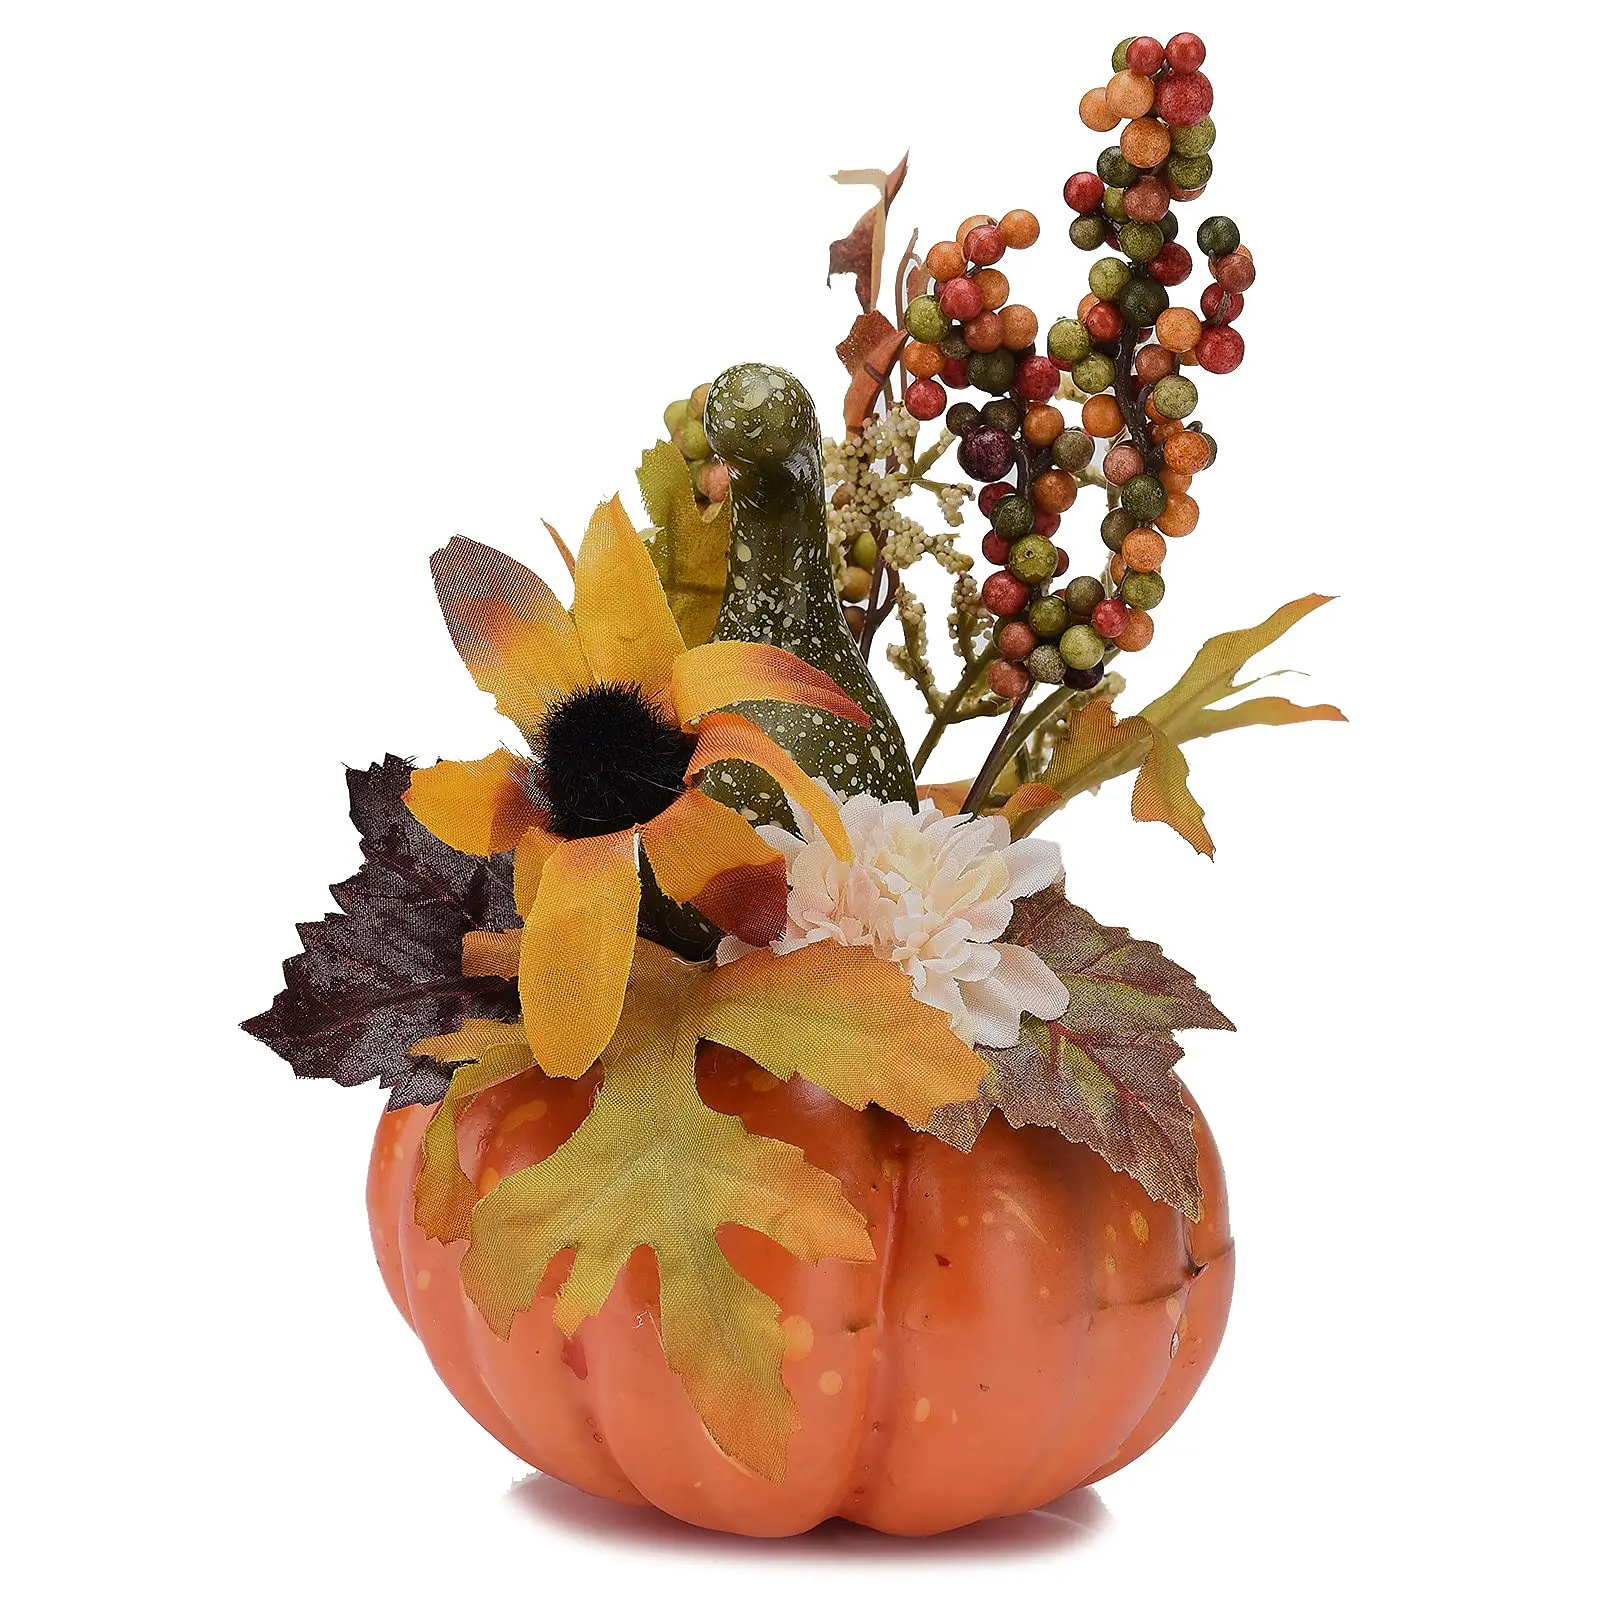 zucca decorata con fiori - Come si riconoscono le zucche non commestibili